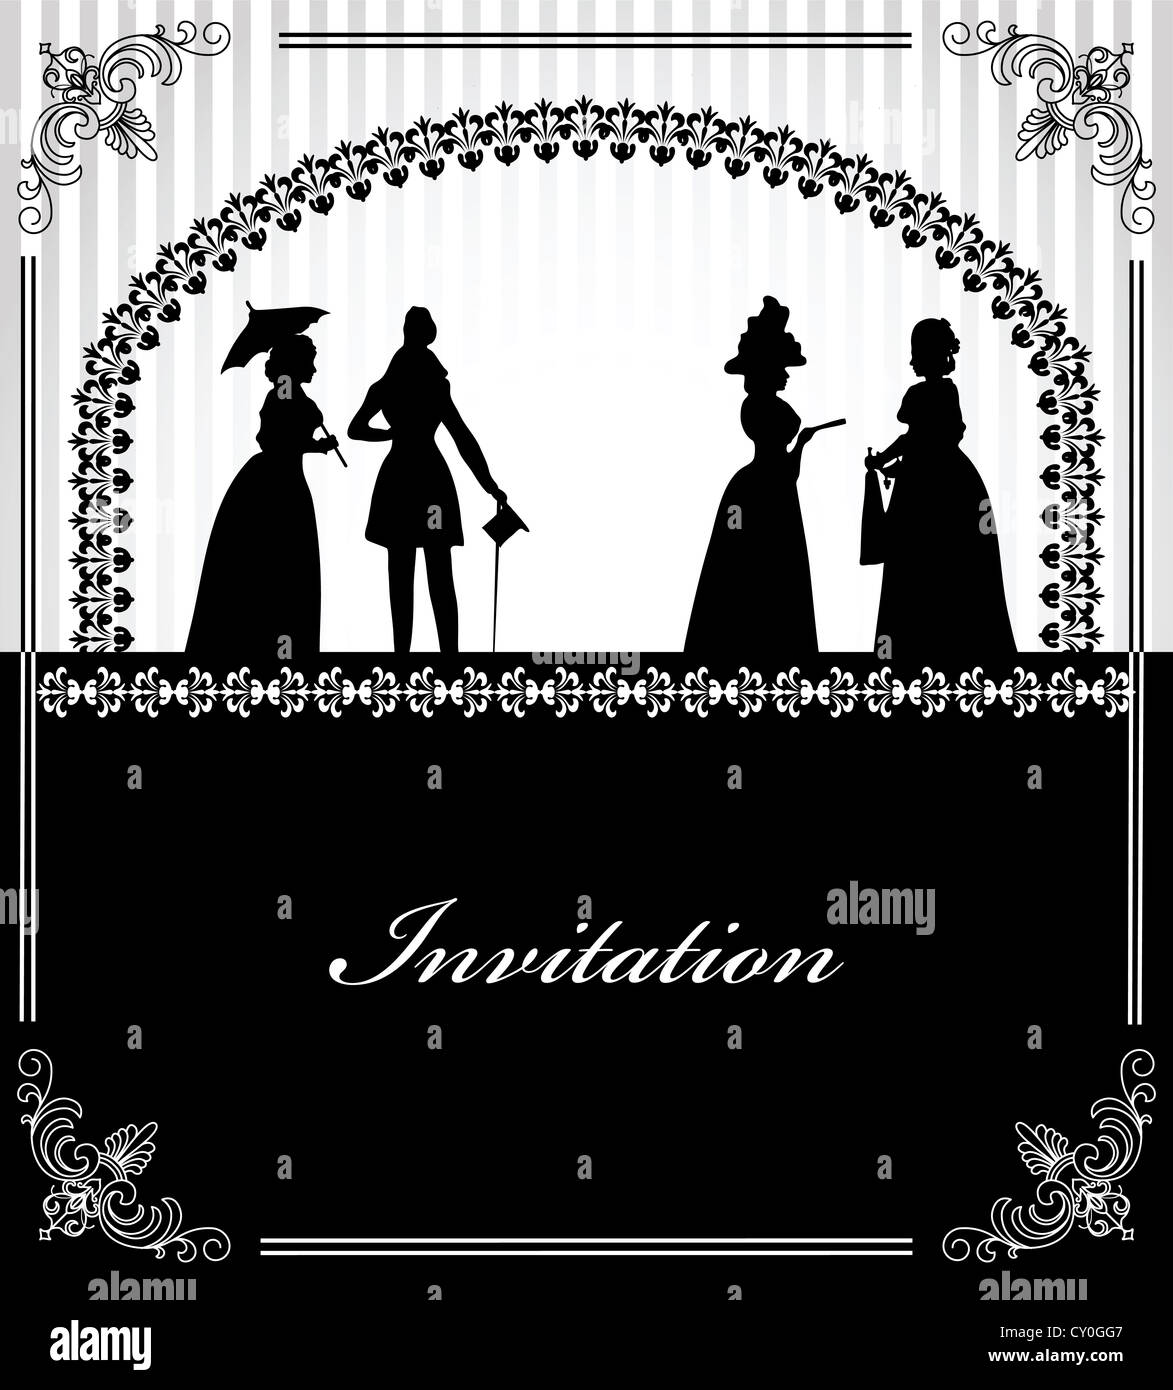 Invitation de mariage avec des silhouettes noires de lady et gentleman Banque D'Images